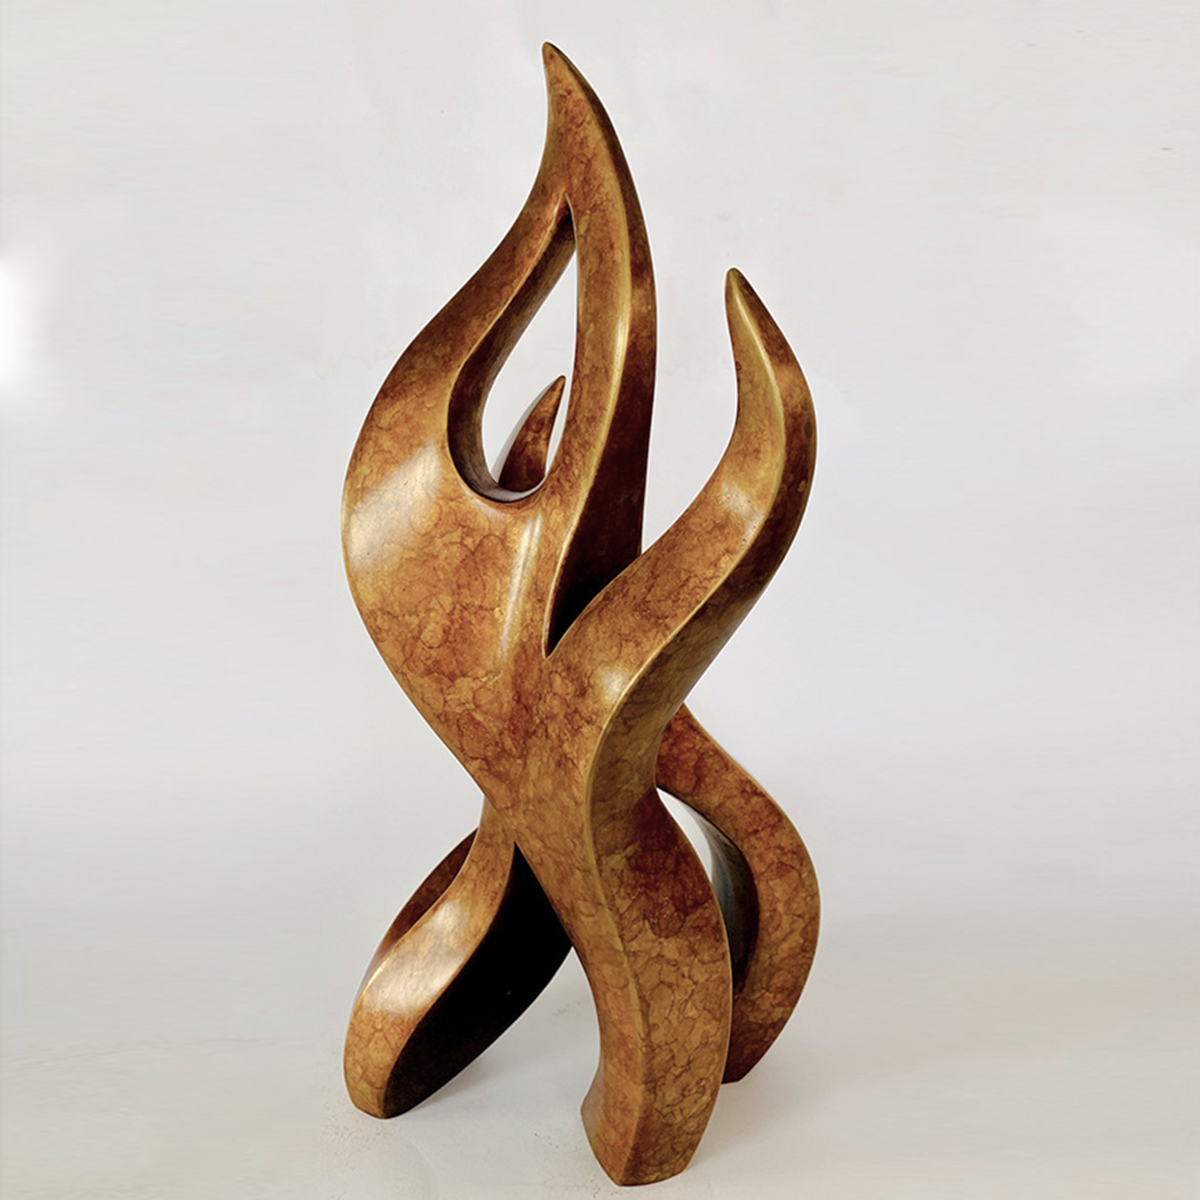 bronze fire flame sculpture small desktop